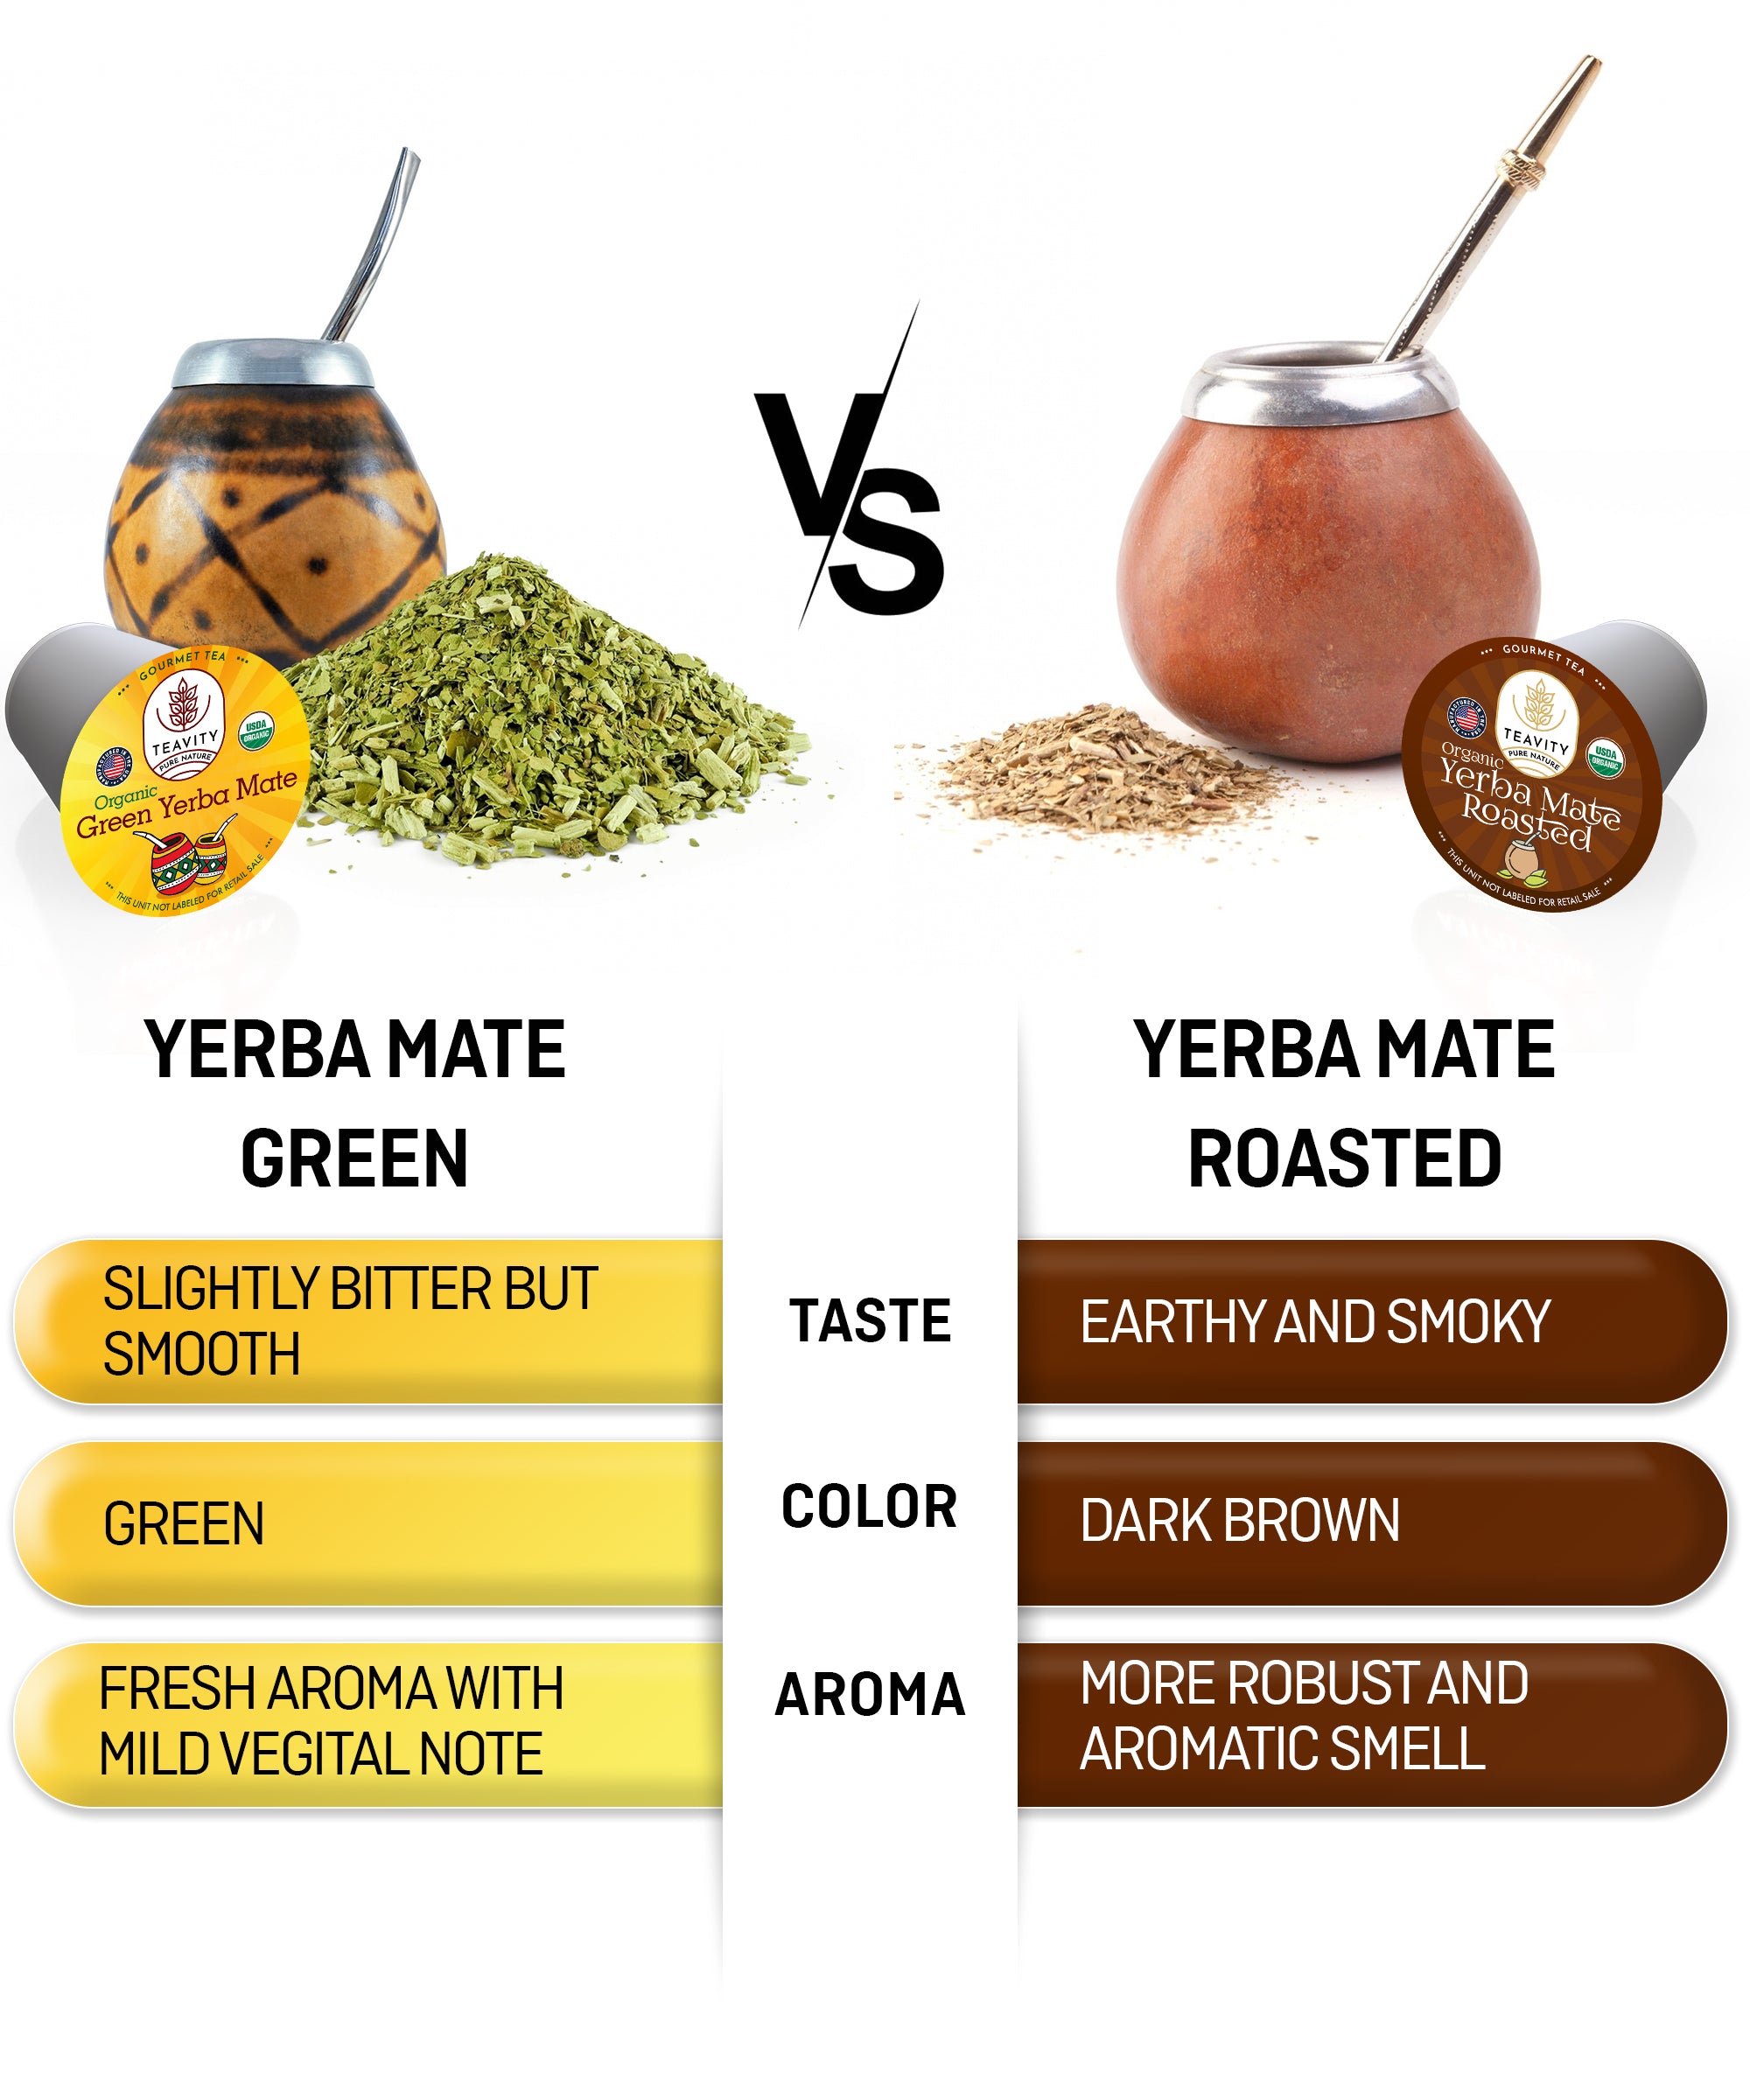 Organic Yerba Mate Roasted Tea